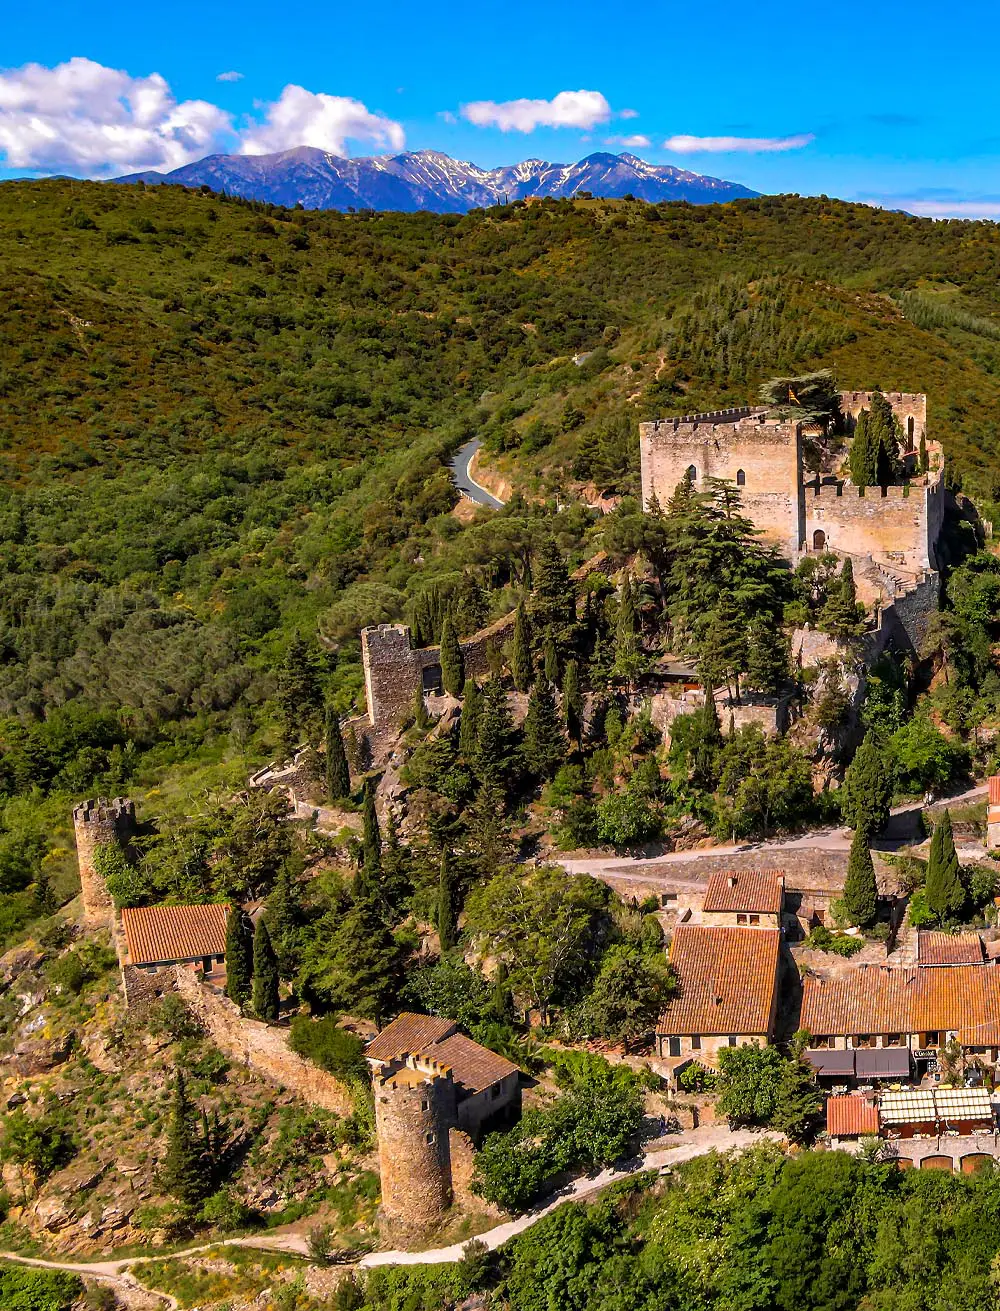 Le village médiéval de Castelnou